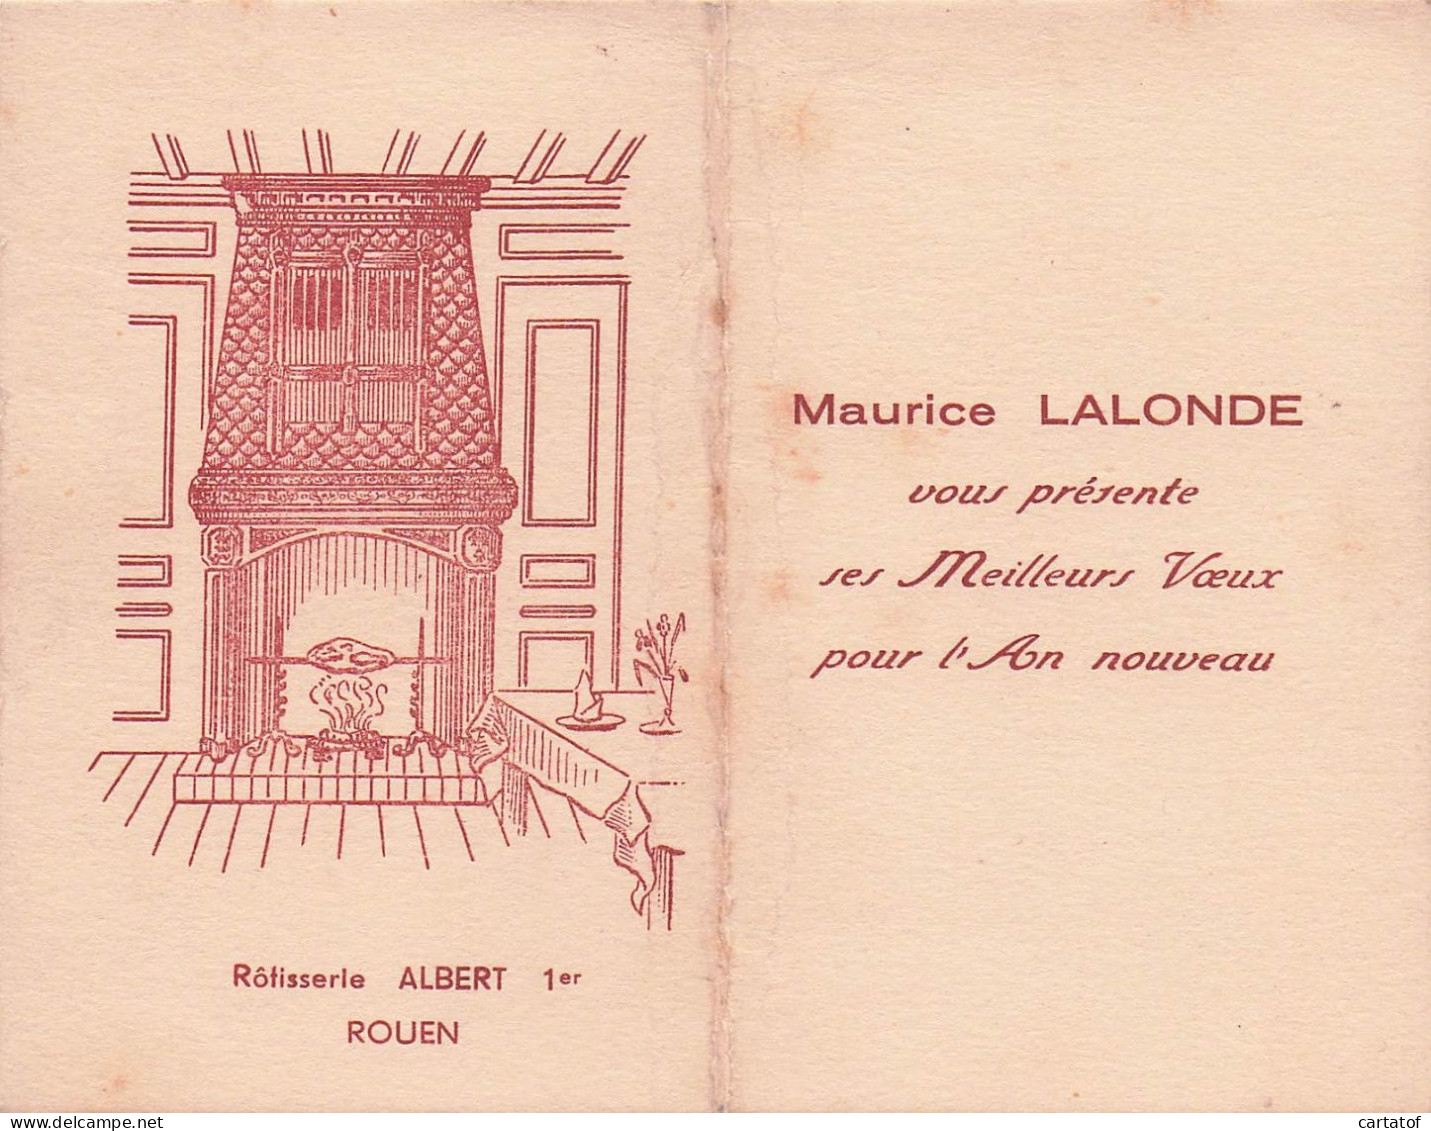 Rotisserie ALBERT 1er  ROUEN . Maurice LALONDE Présente Ses Meilleurs Vœux - Hotelkarten